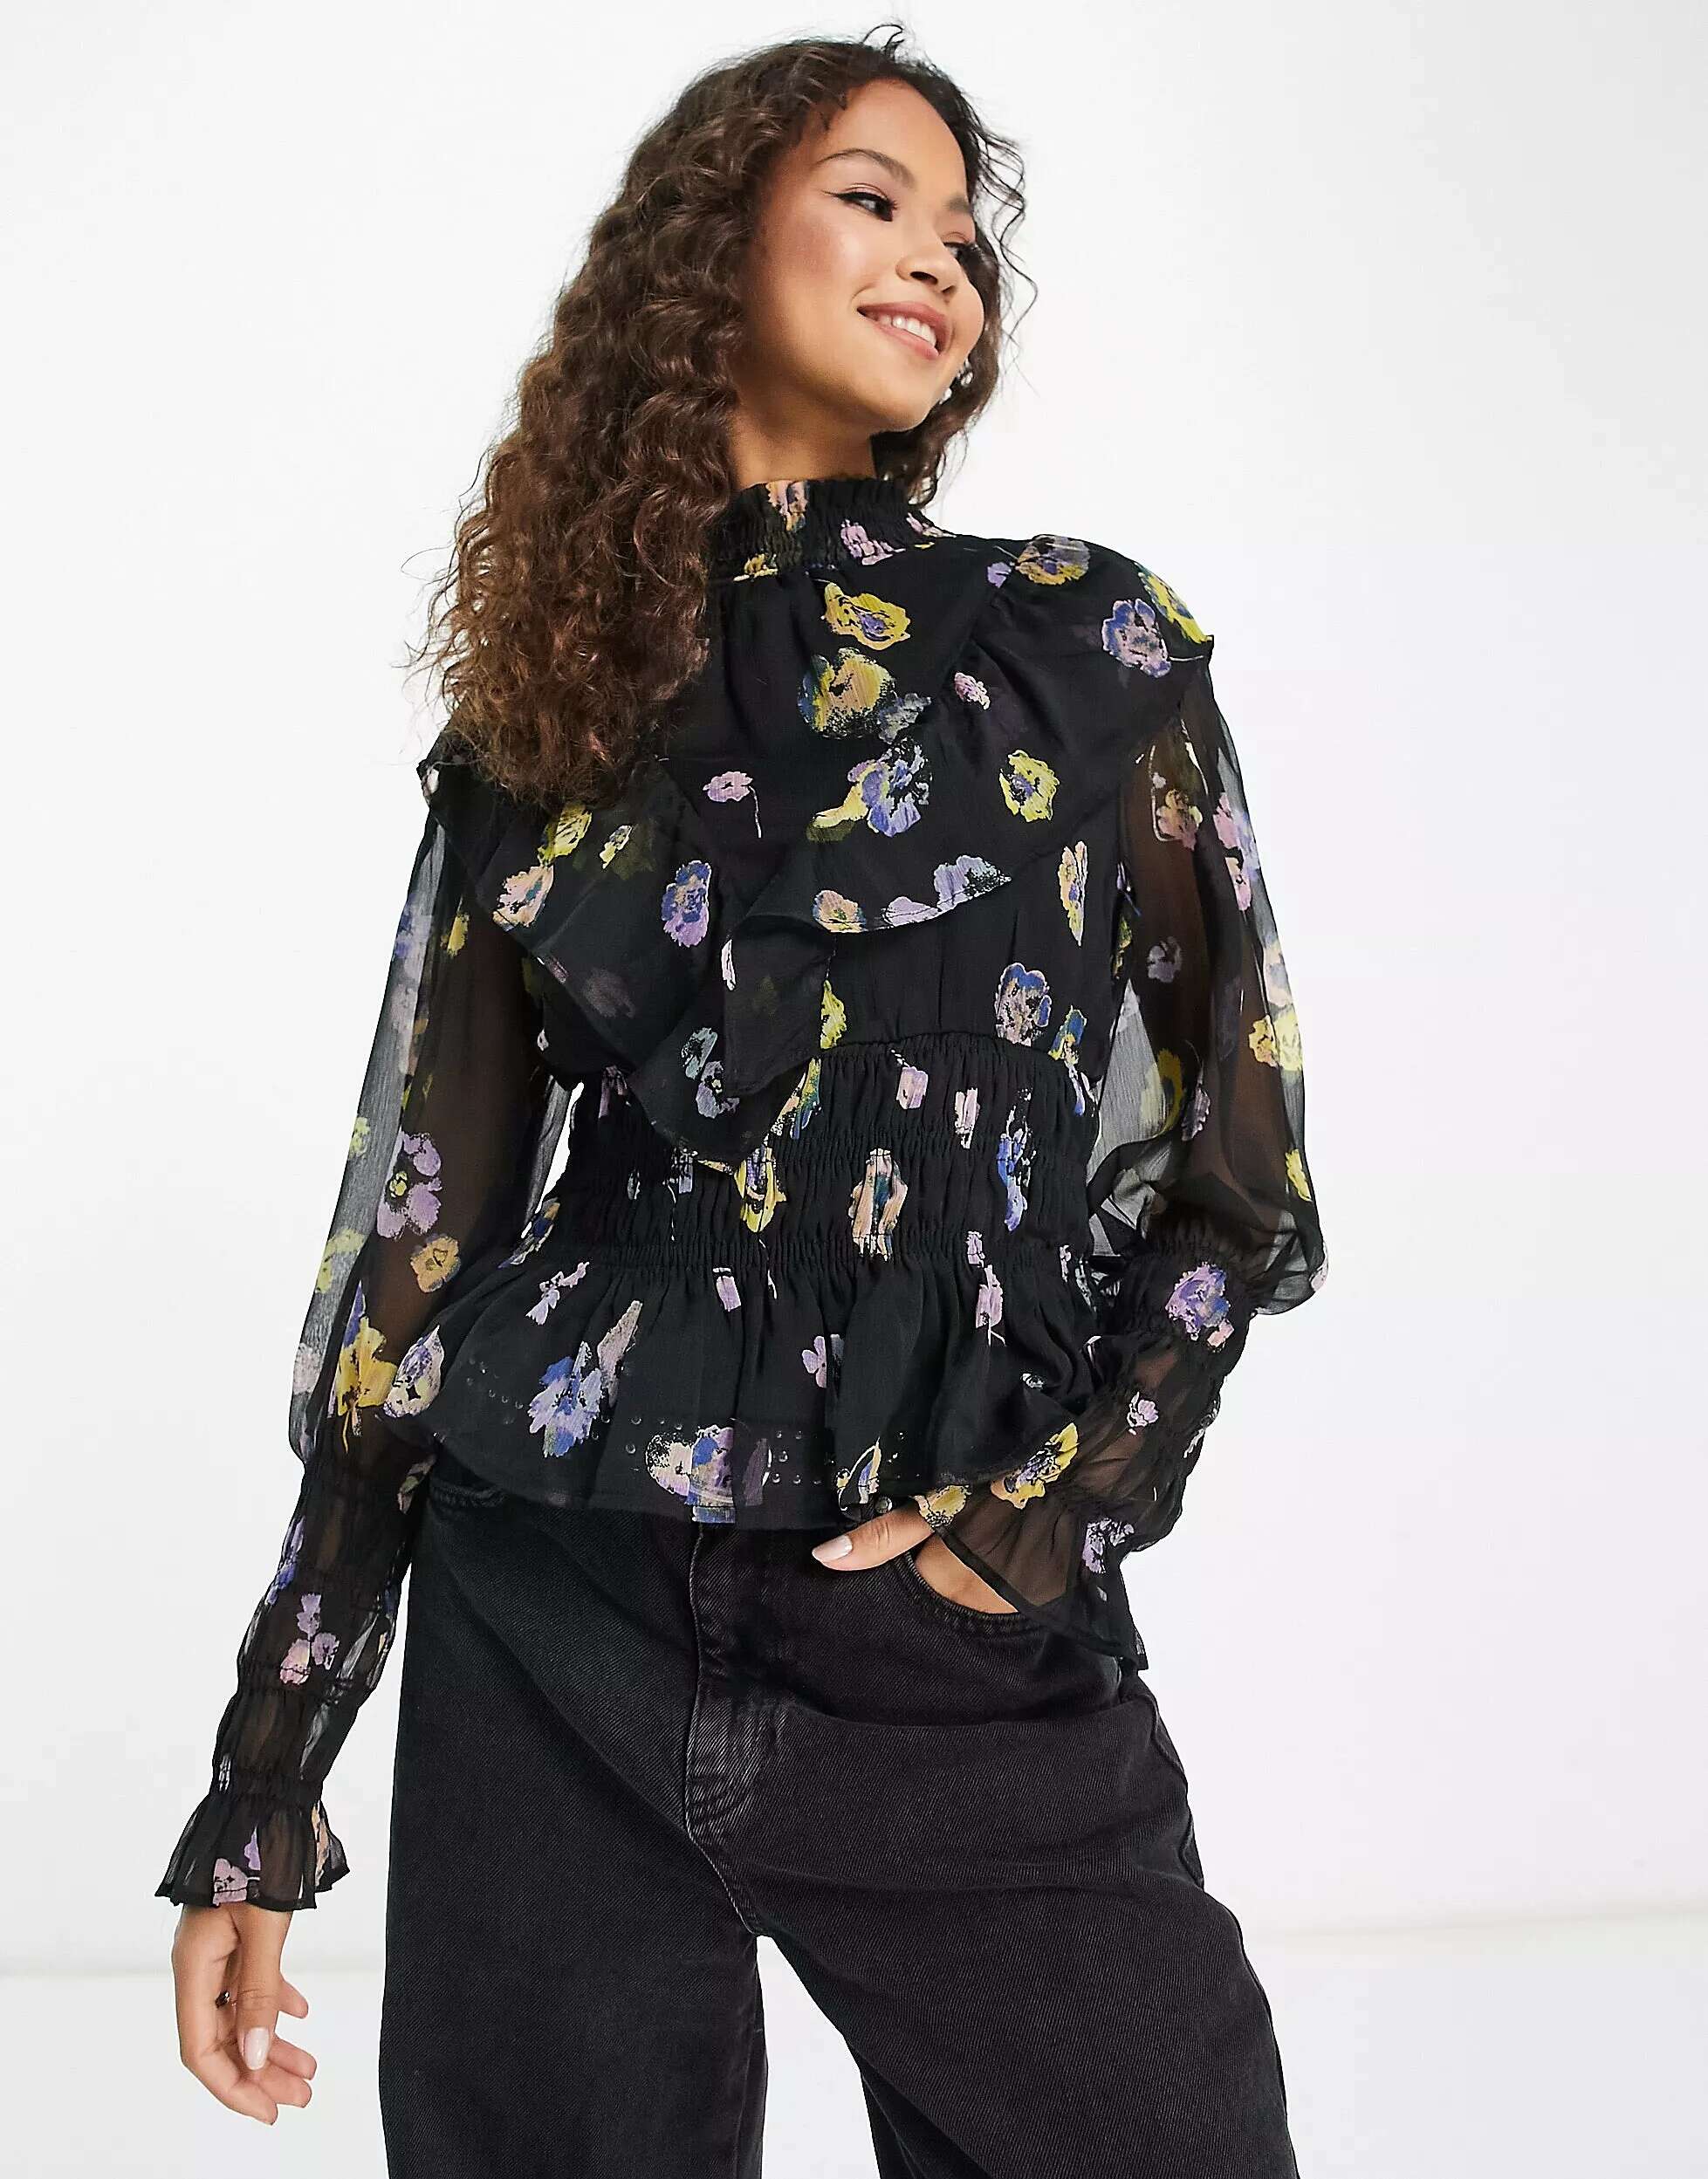 Блузка с присборками Vero Moda с цветочным принтом блузка с присборками vero moda с цветочным принтом